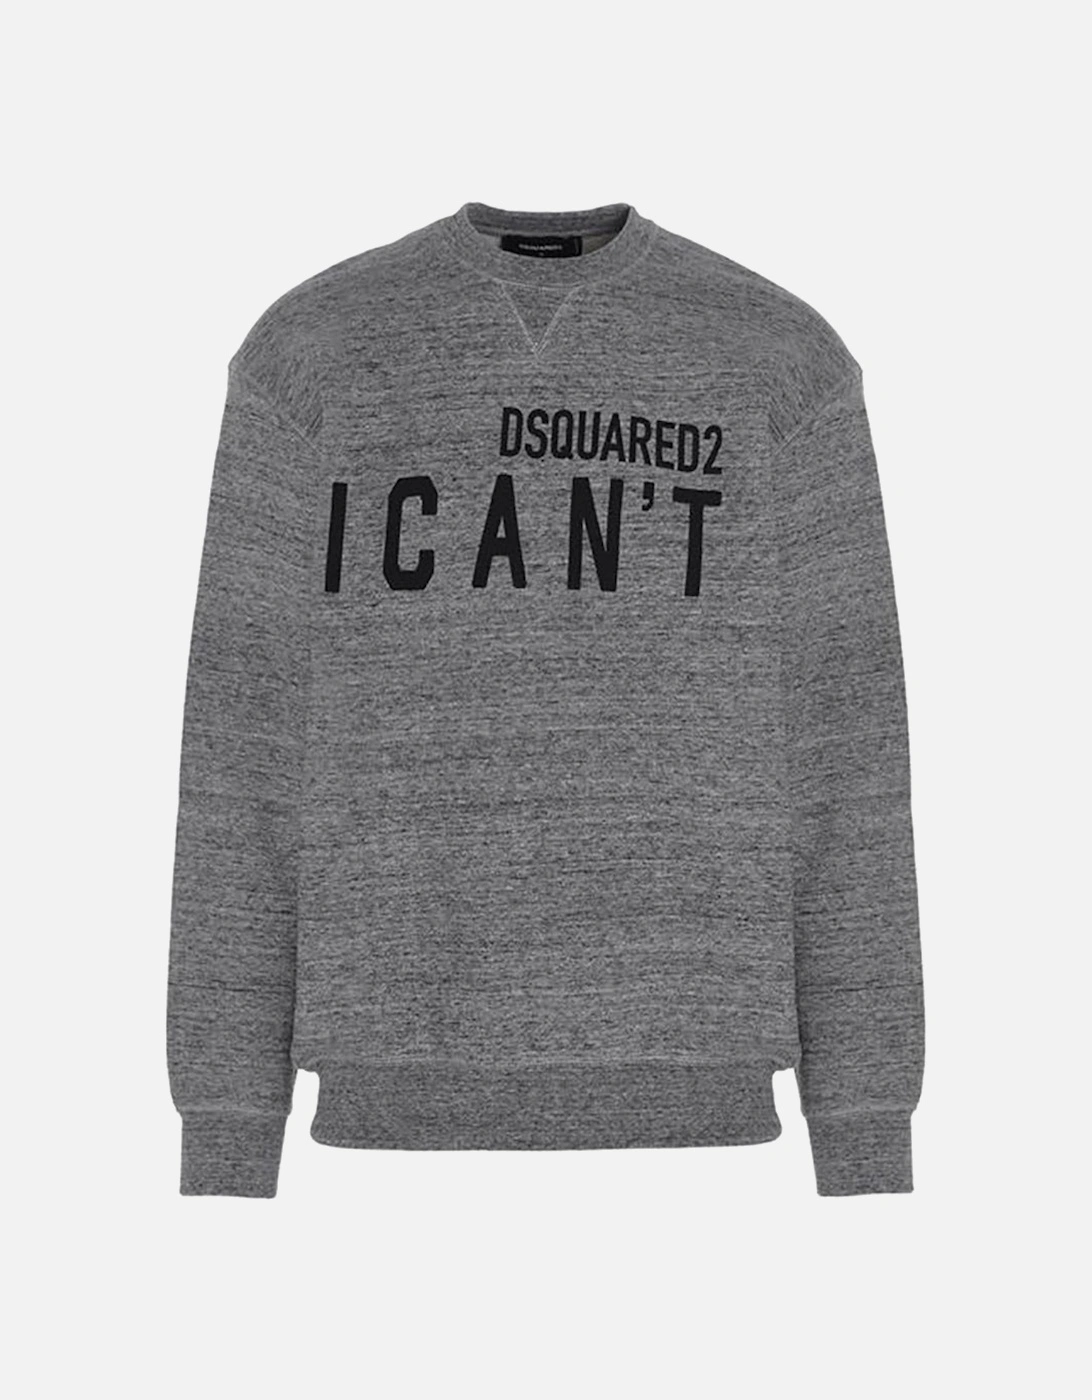 Men's "I CAN'T" Sweatshirt Grey, 4 of 3